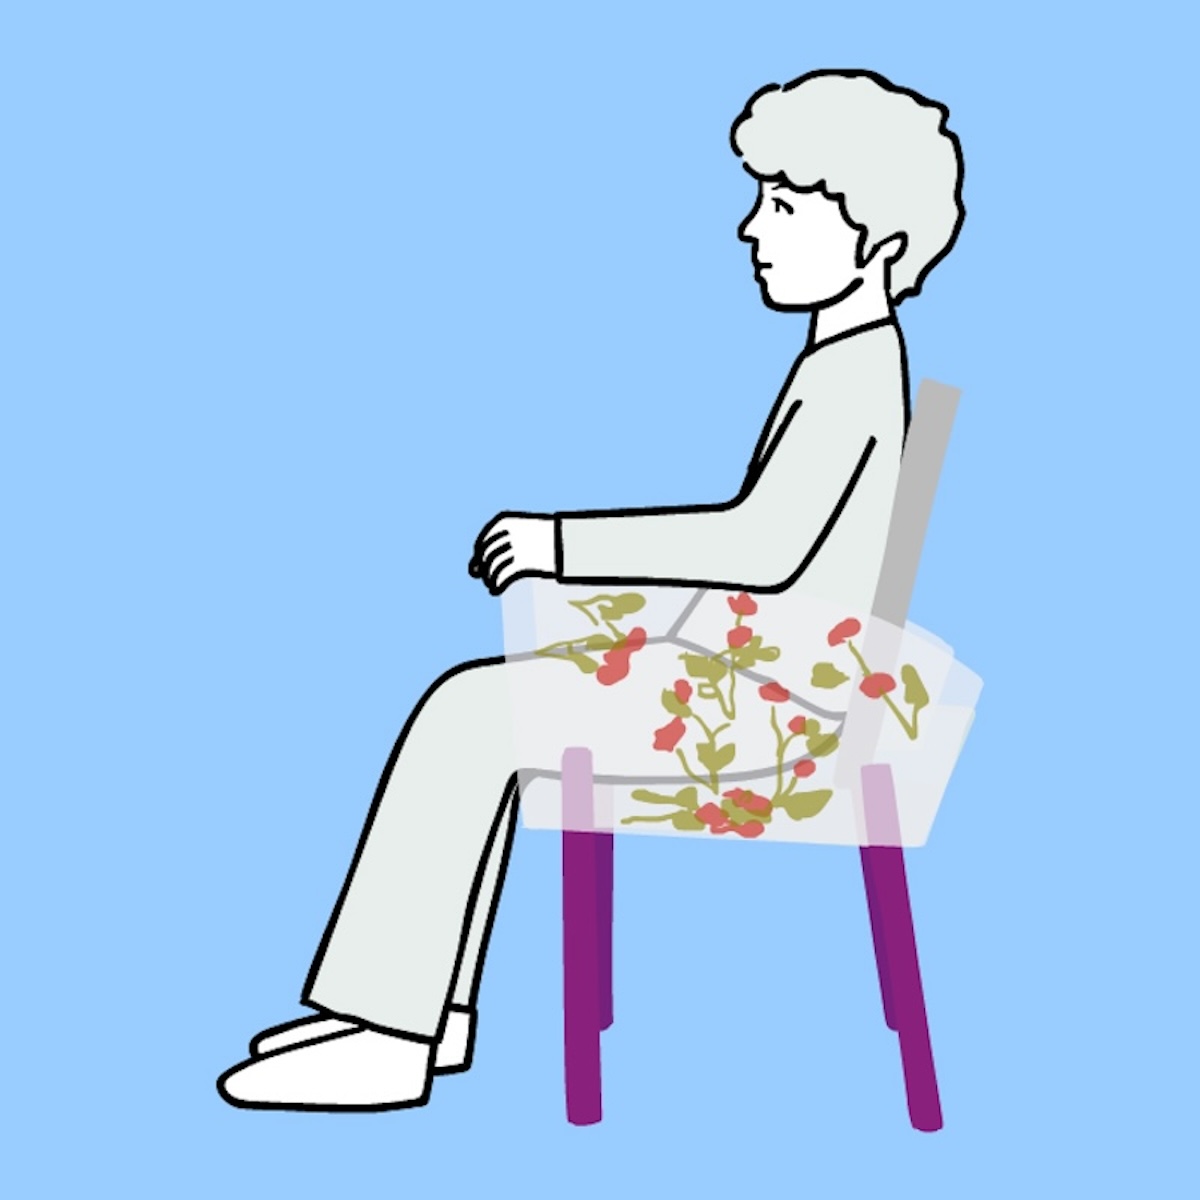 浮遊感を表現する近未来的な椅子を生み出した倉俣史朗【河内タカの素顔